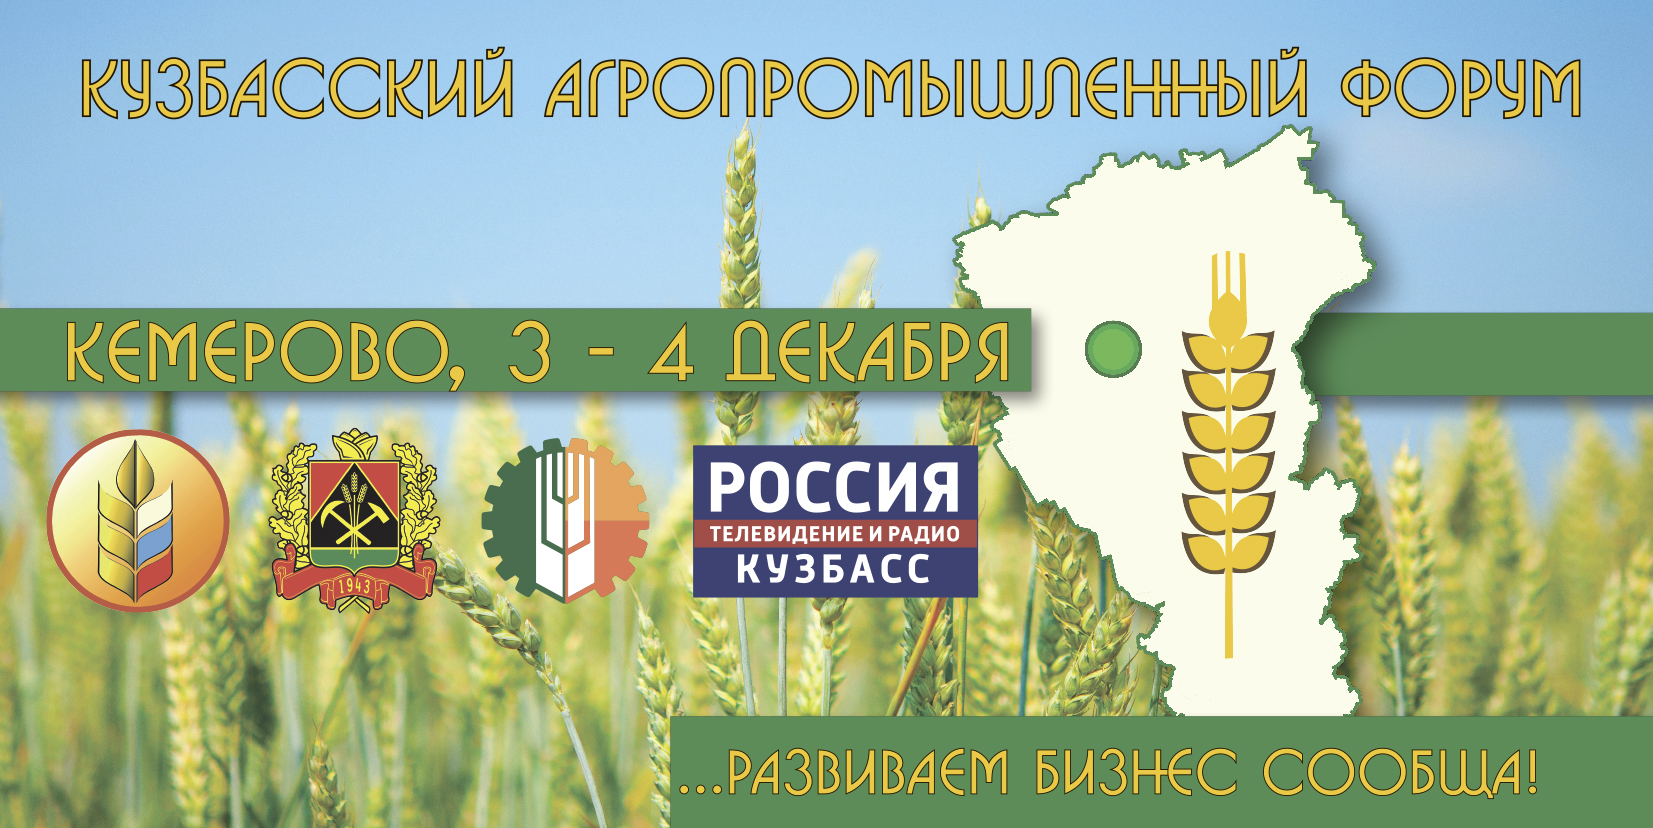 Агропромышленный форум состоится в Кузбасской ГСХА 